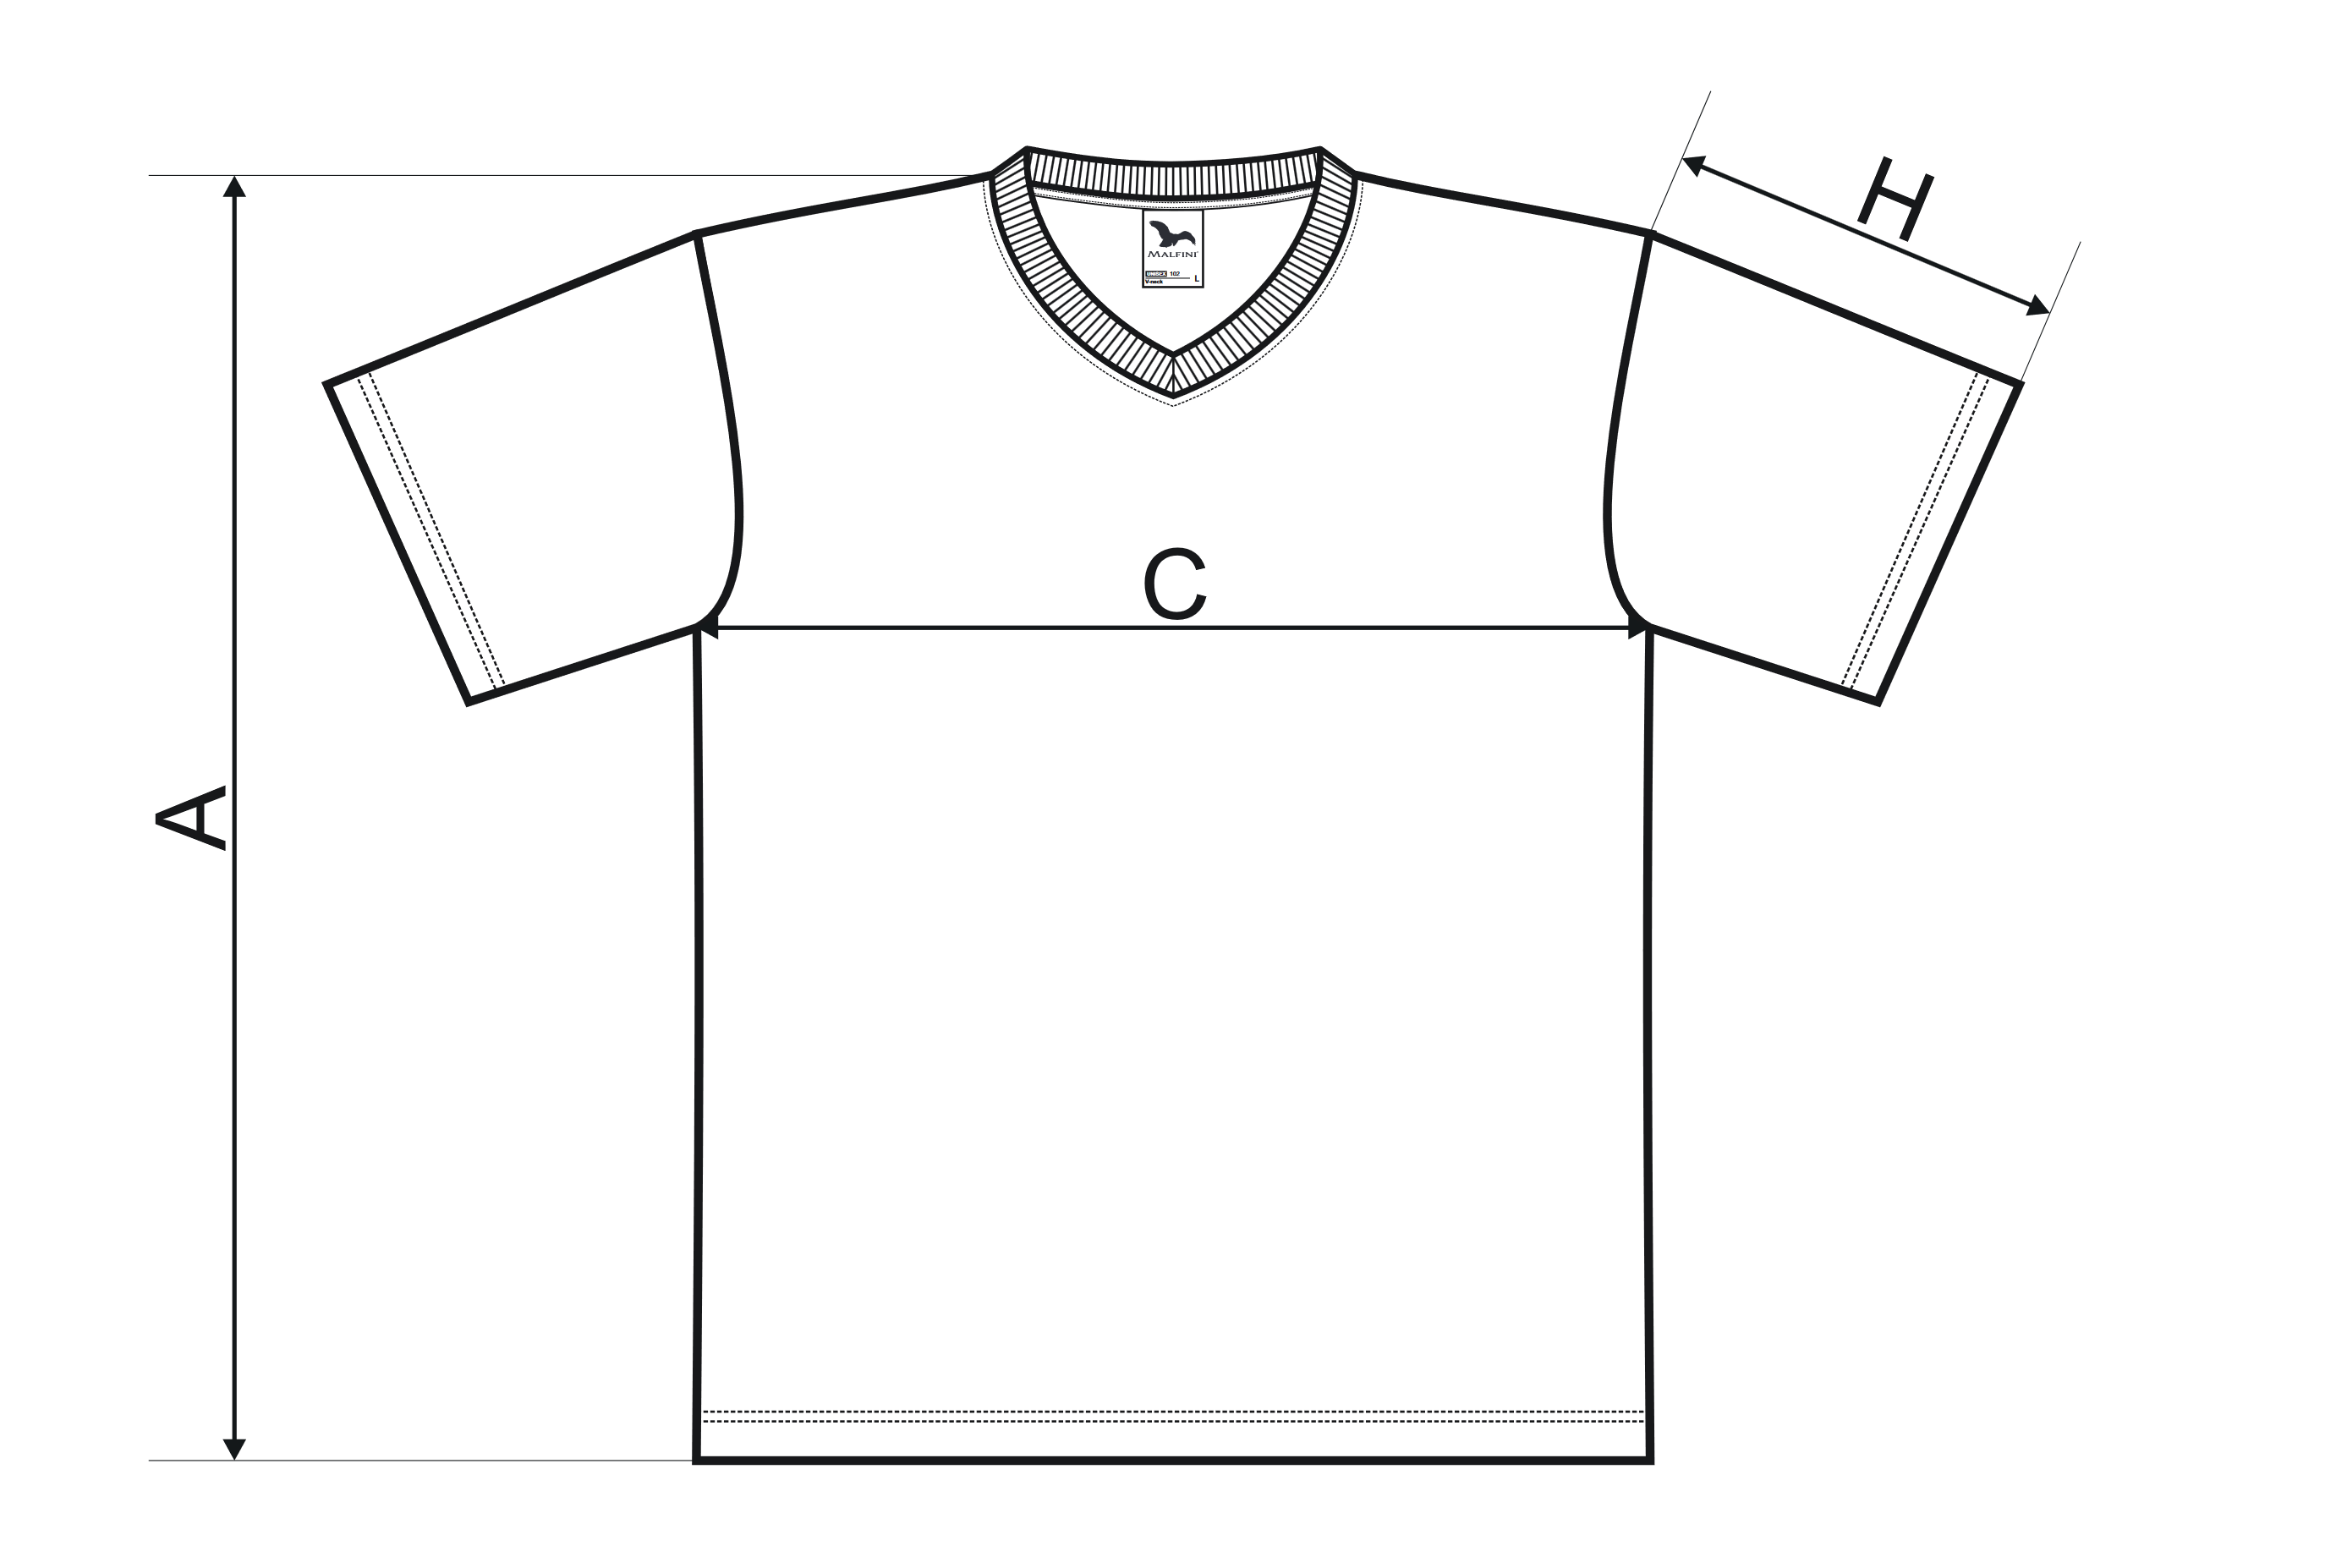 Tričko s krátkým rukávem, středně hrubé - Tabulka rozměrů